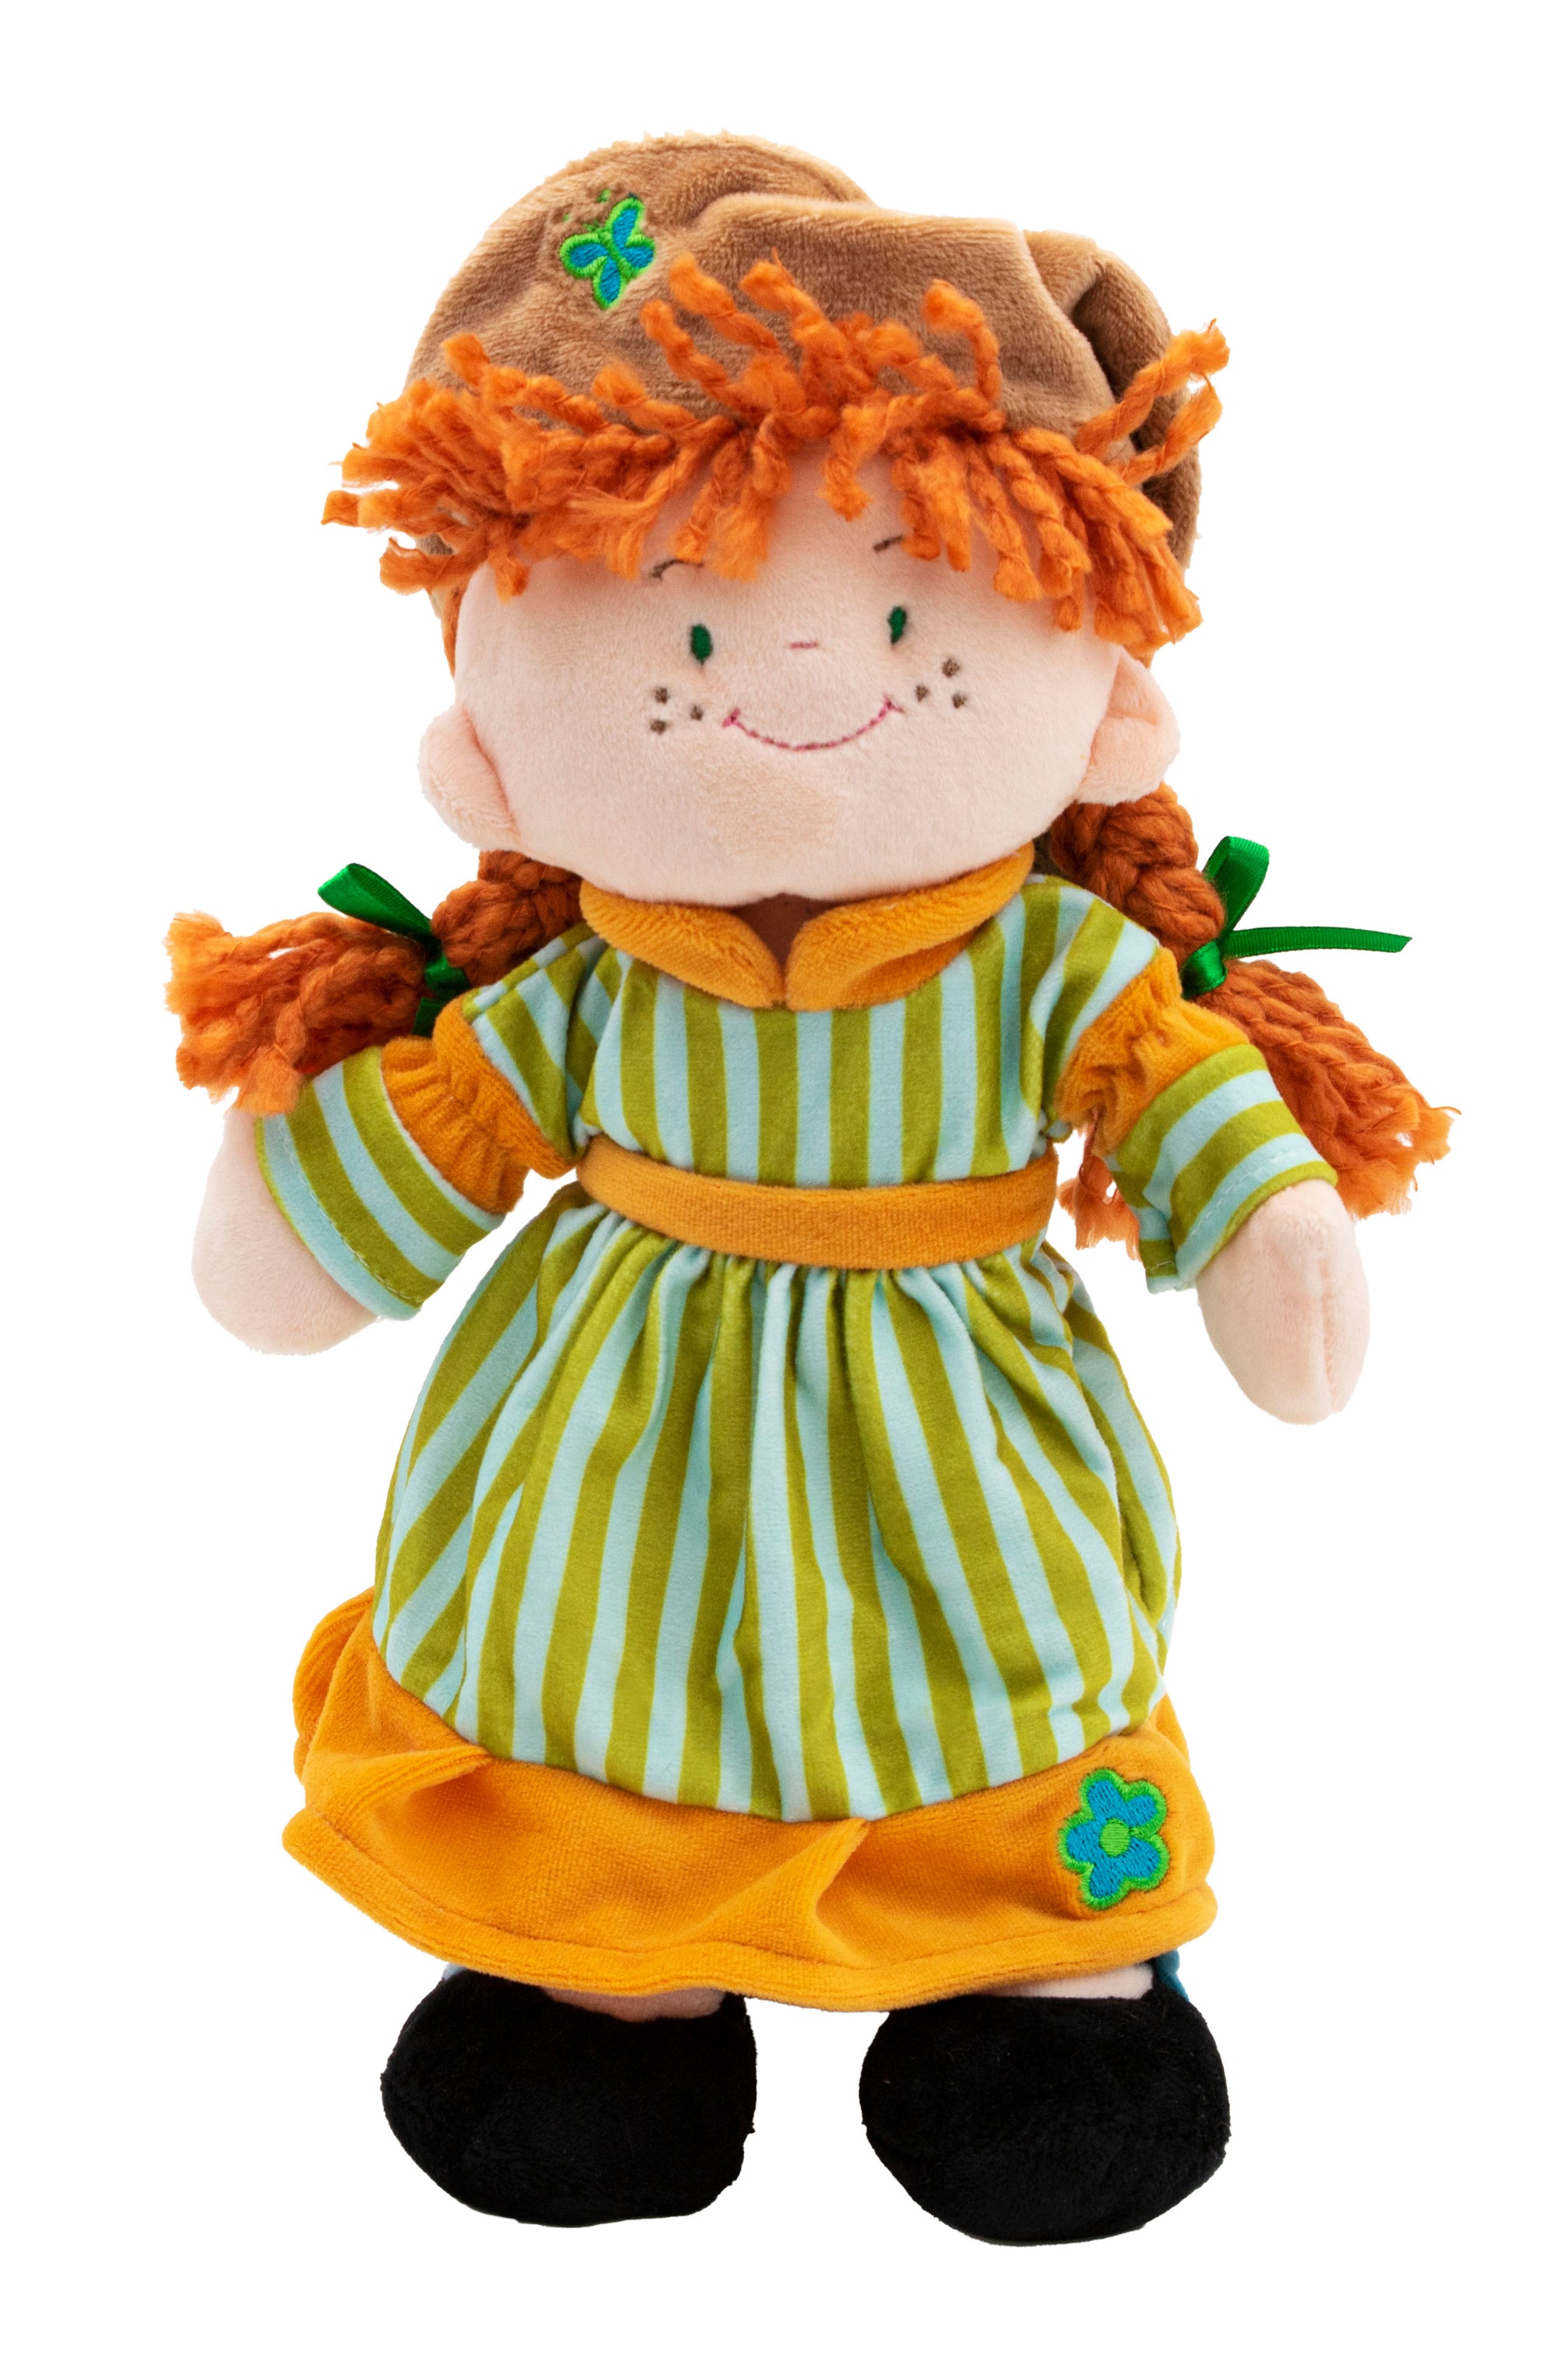 Ania z Zielonego Wzgórza Plush 9 Inch Doll